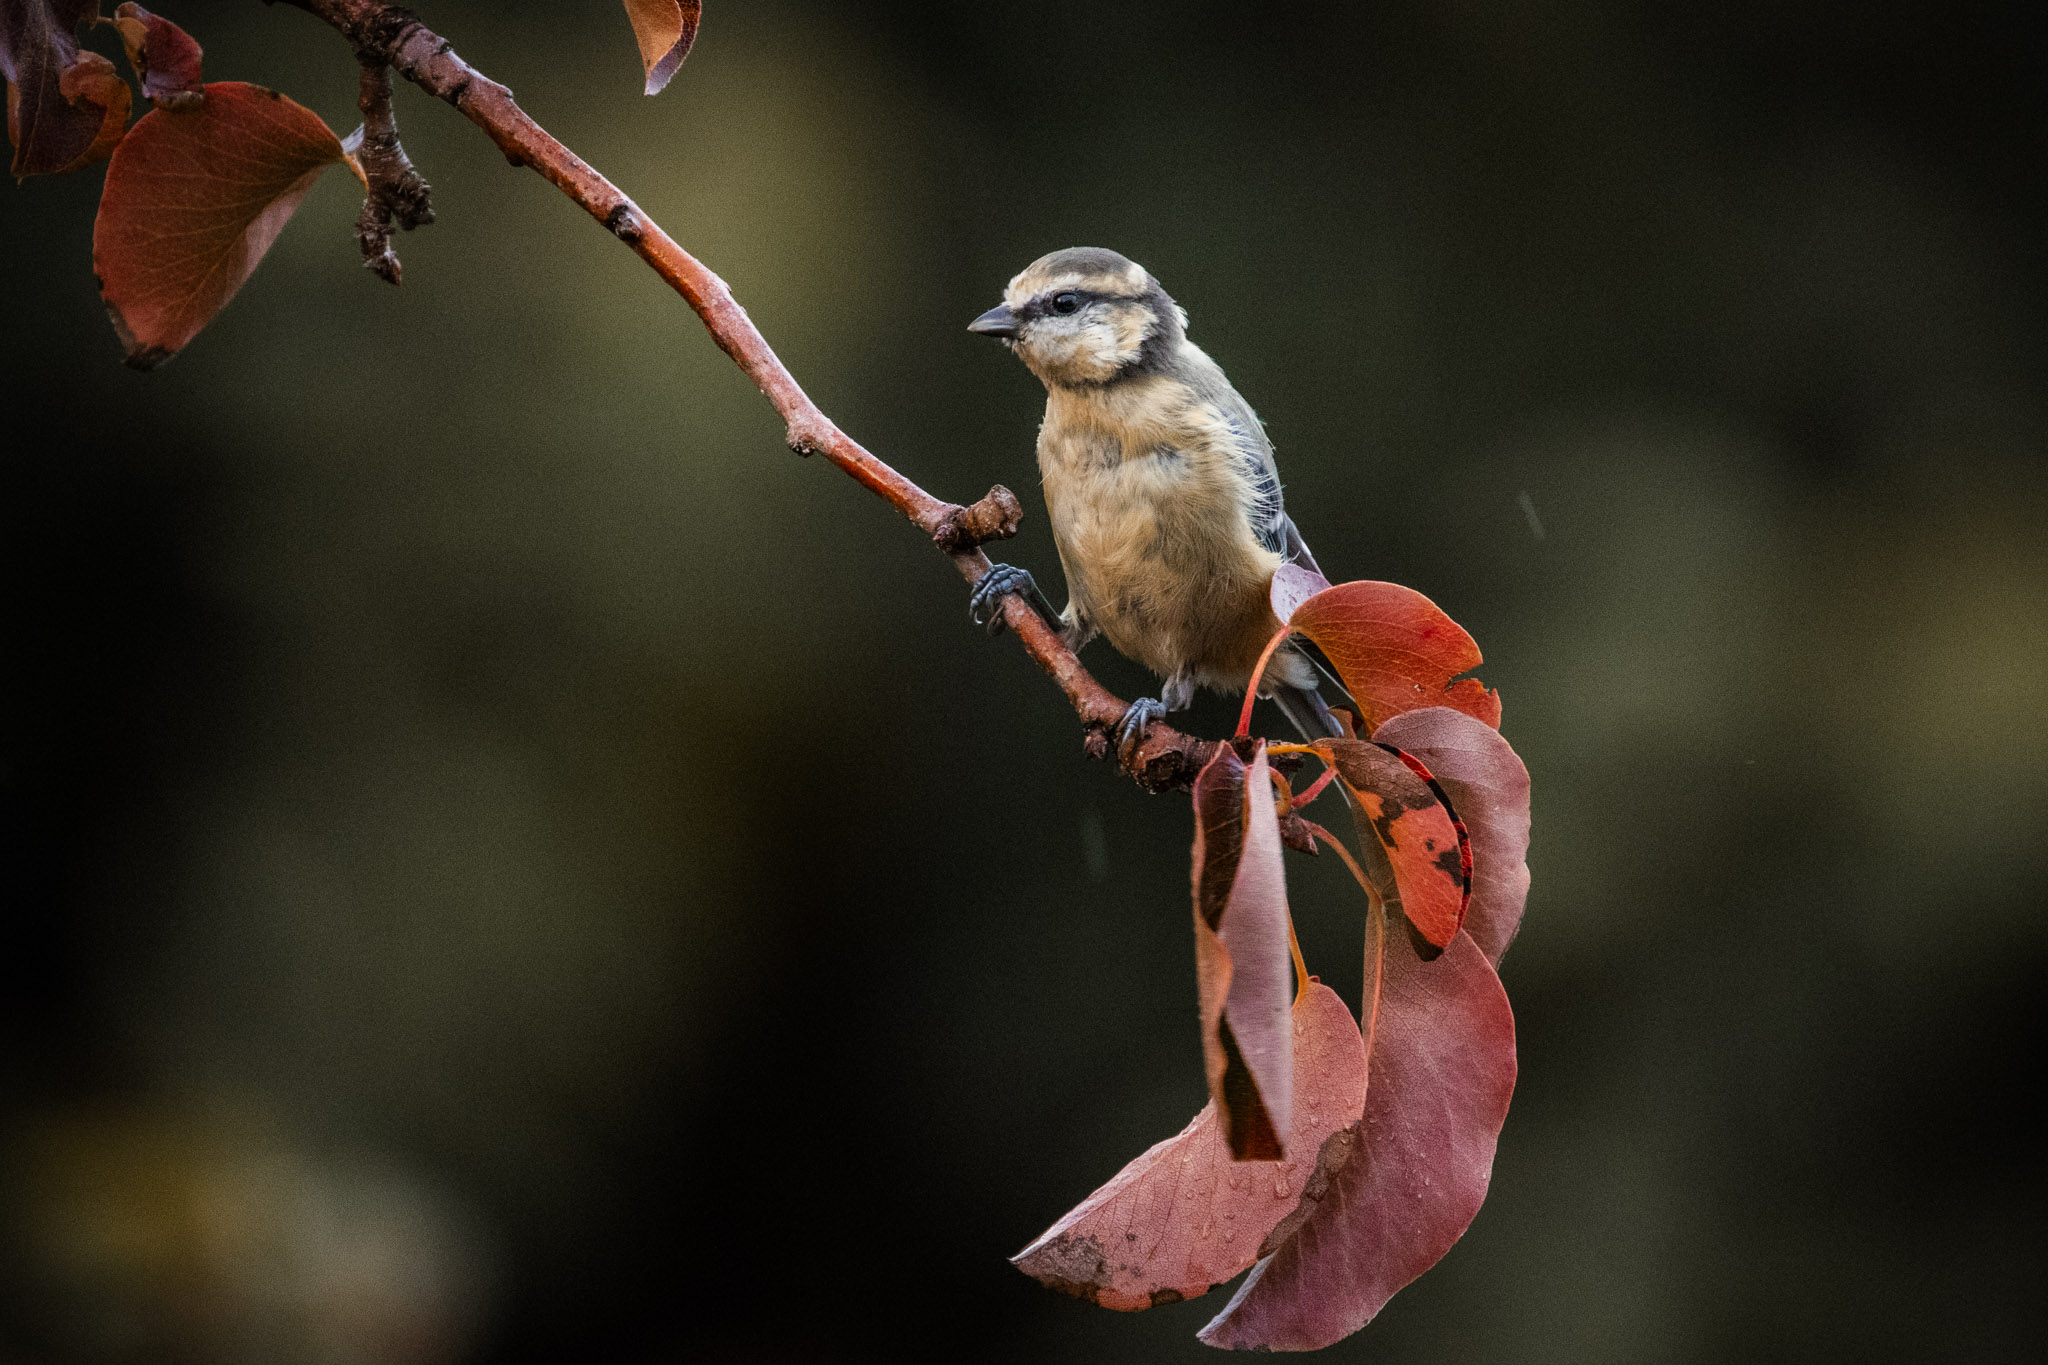 Vögel fotografieren – Tipps und Tricks zur Vogelfotografie